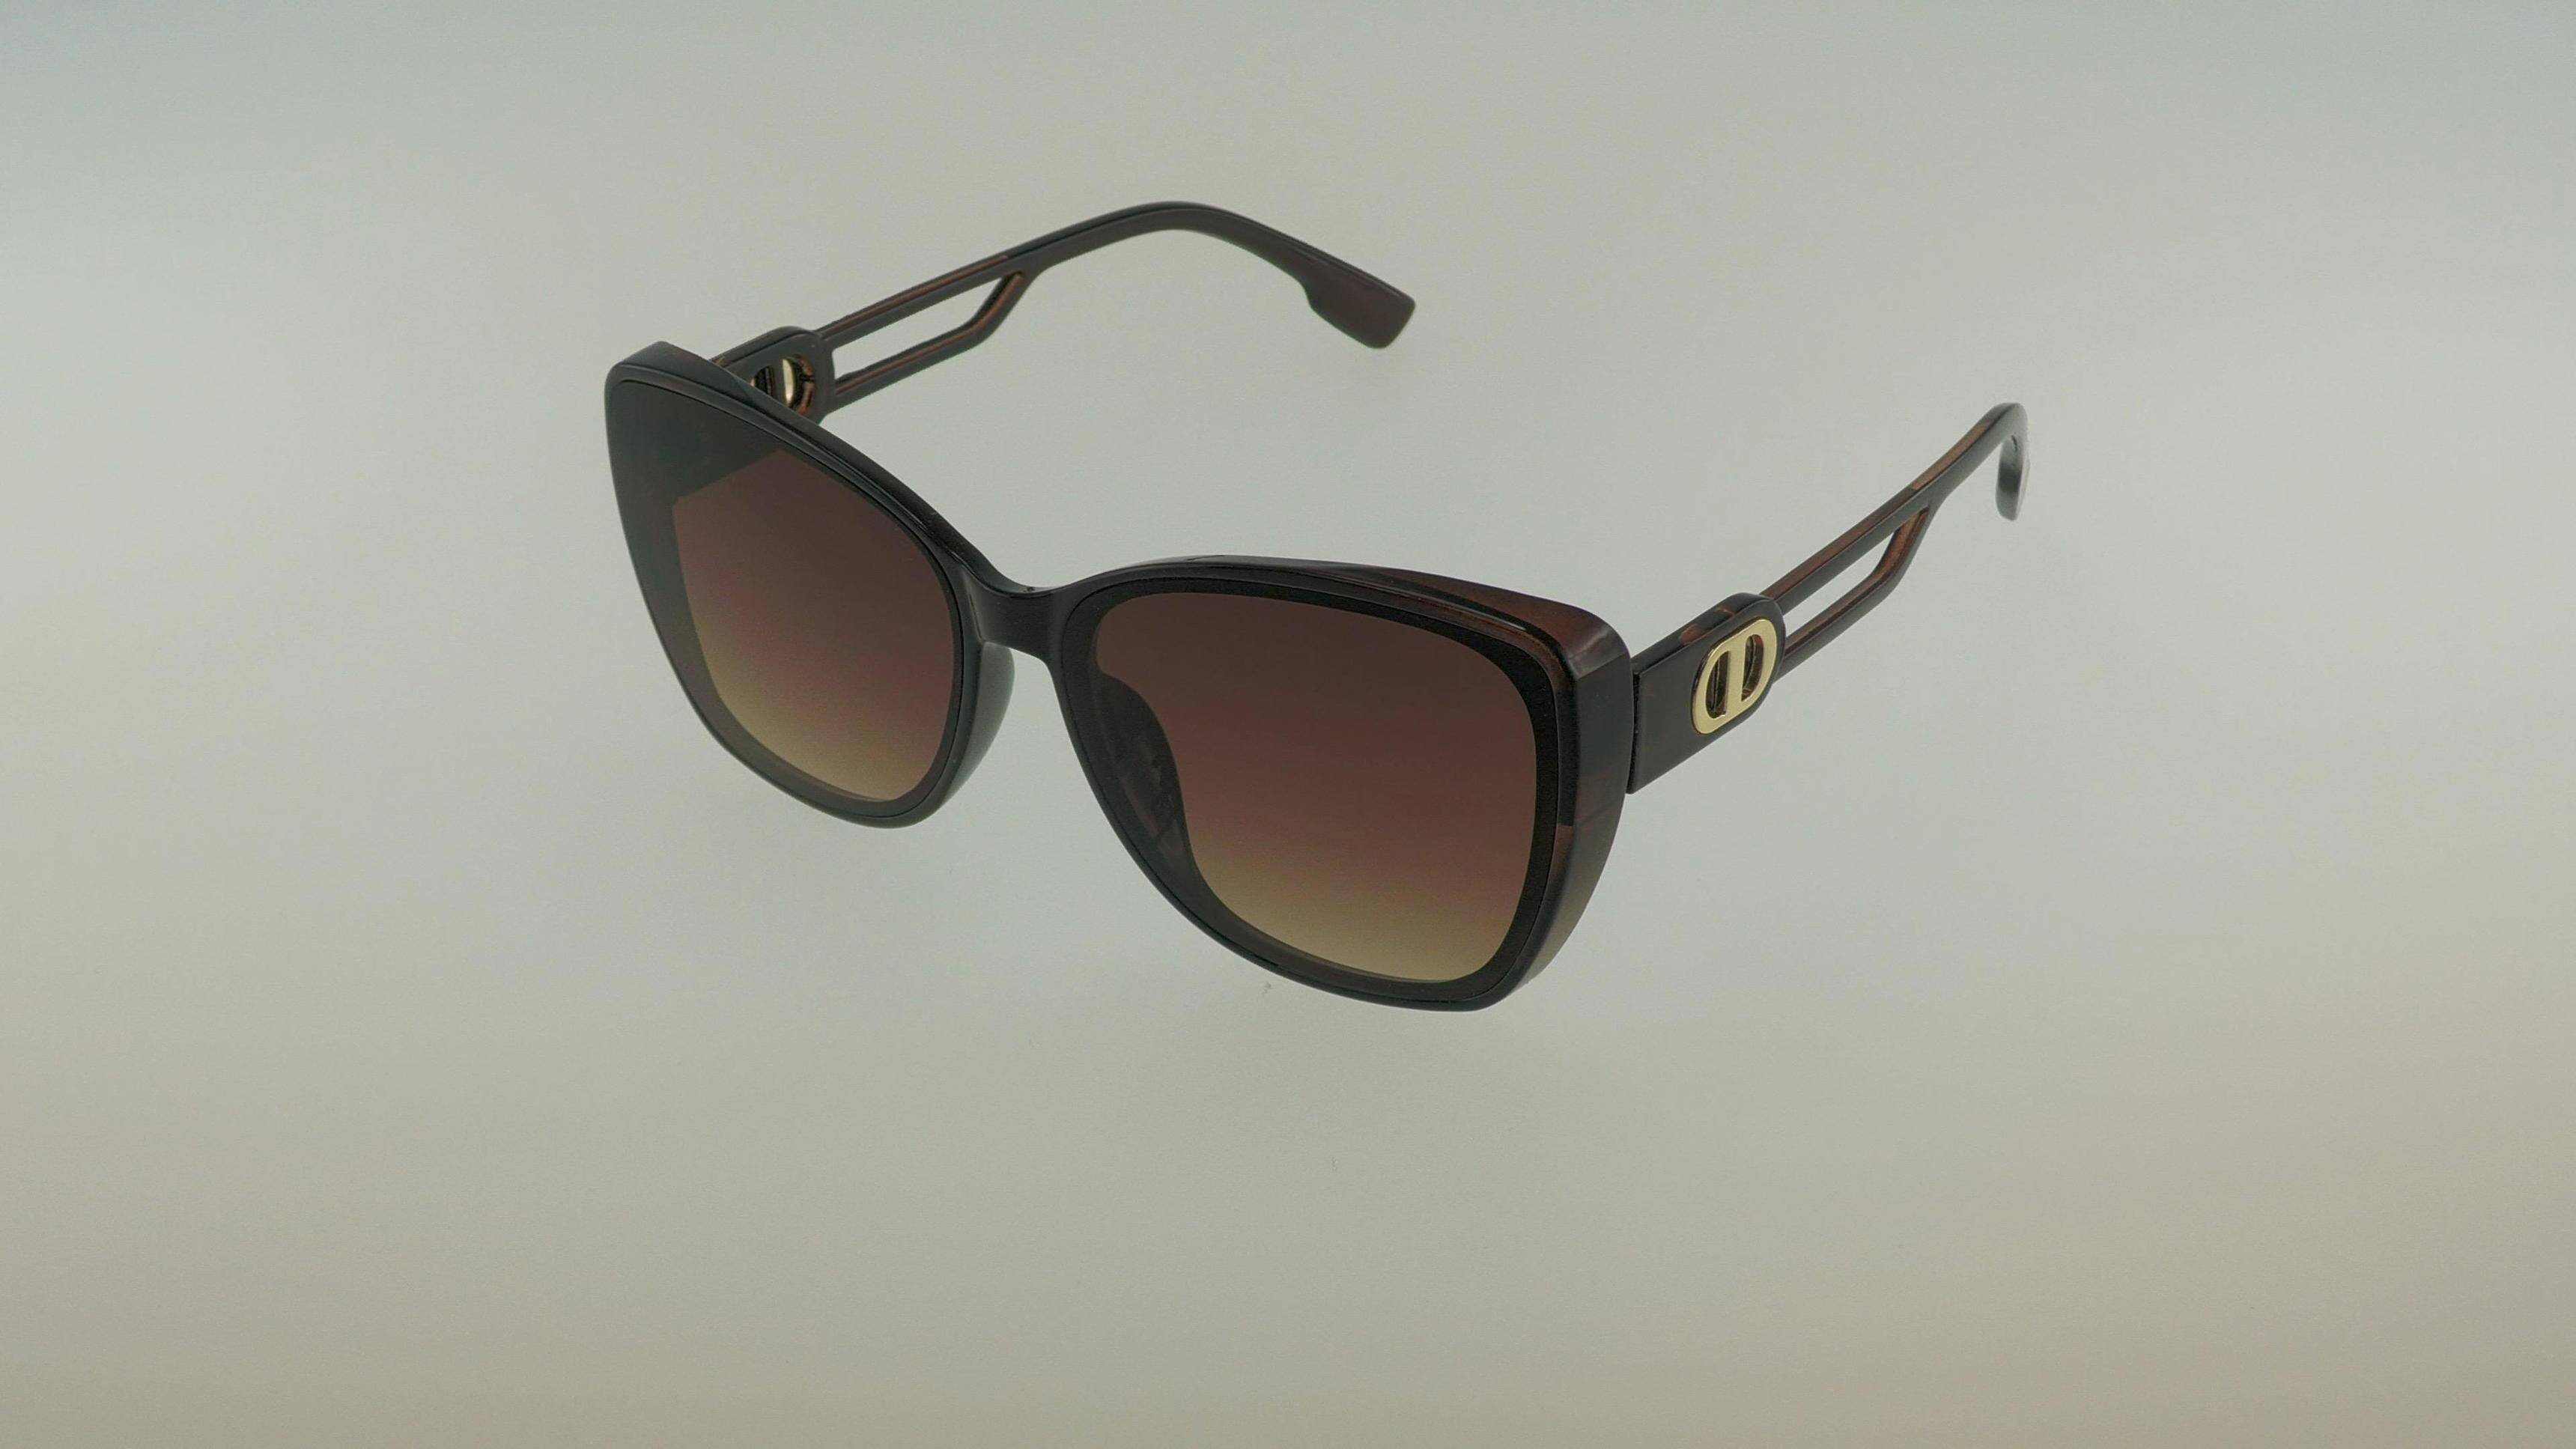 Okulary przeciwsłoneczne 253160 brown (Zdjęcie 1)